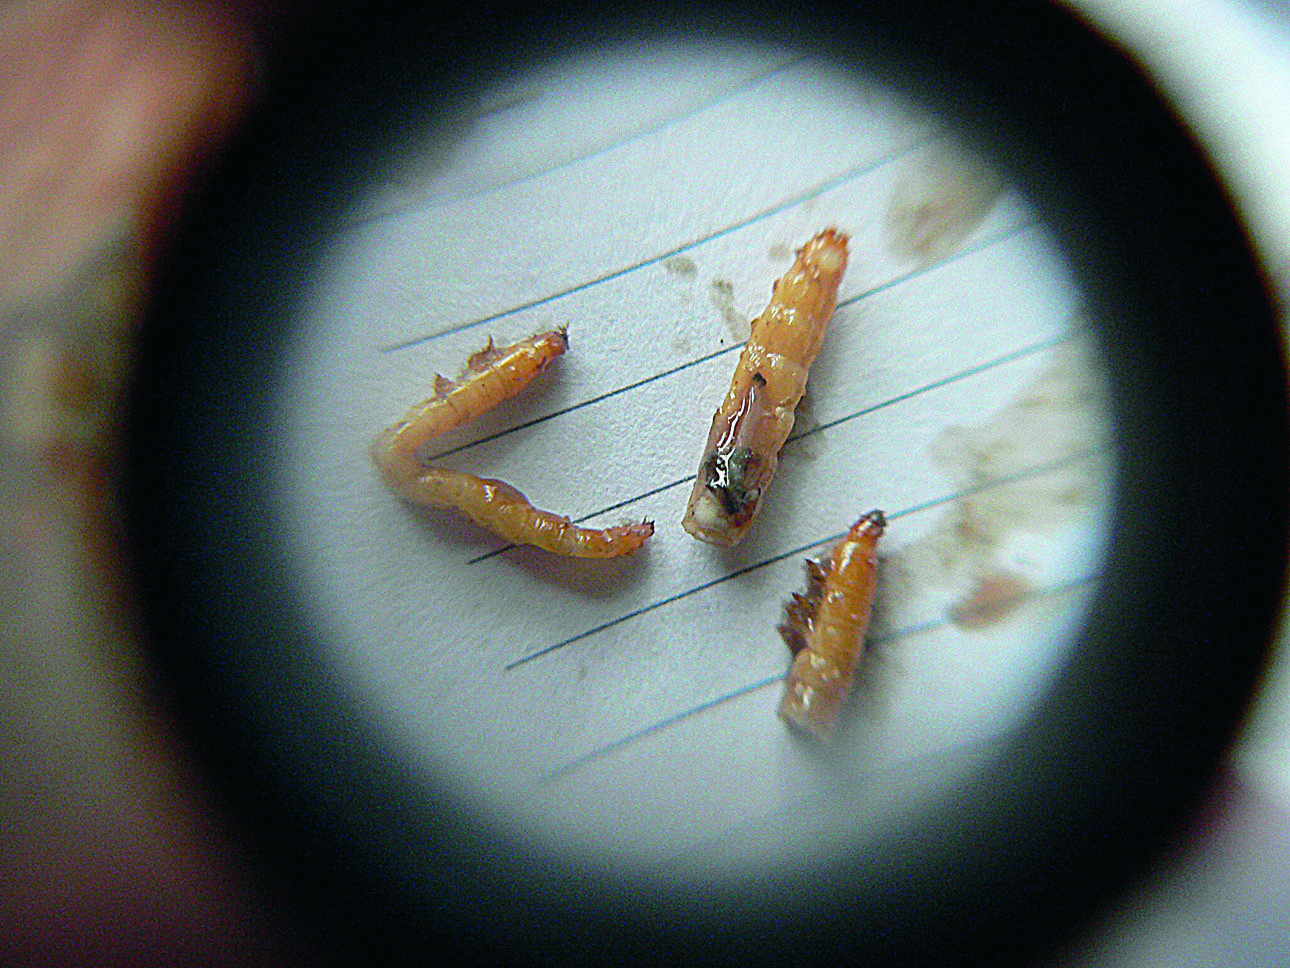 Изображение Личинки мух и жуков — основной корм вальдшнепа весной. Фото автора.